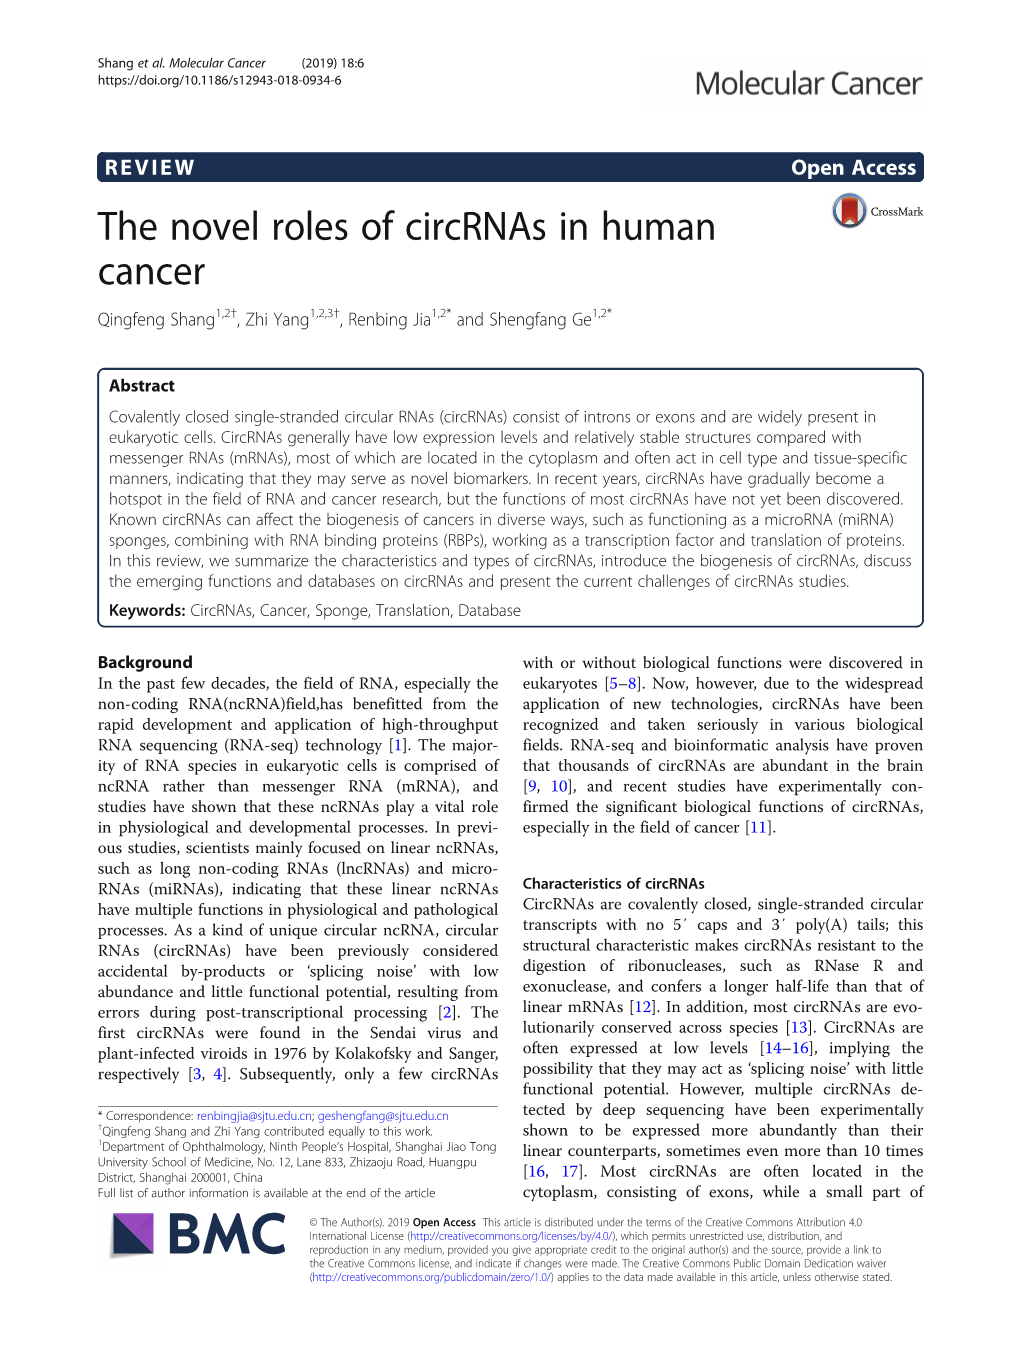 The Novel Roles of Circrnas in Human Cancer Qingfeng Shang1,2†, Zhi Yang1,2,3†, Renbing Jia1,2* and Shengfang Ge1,2*